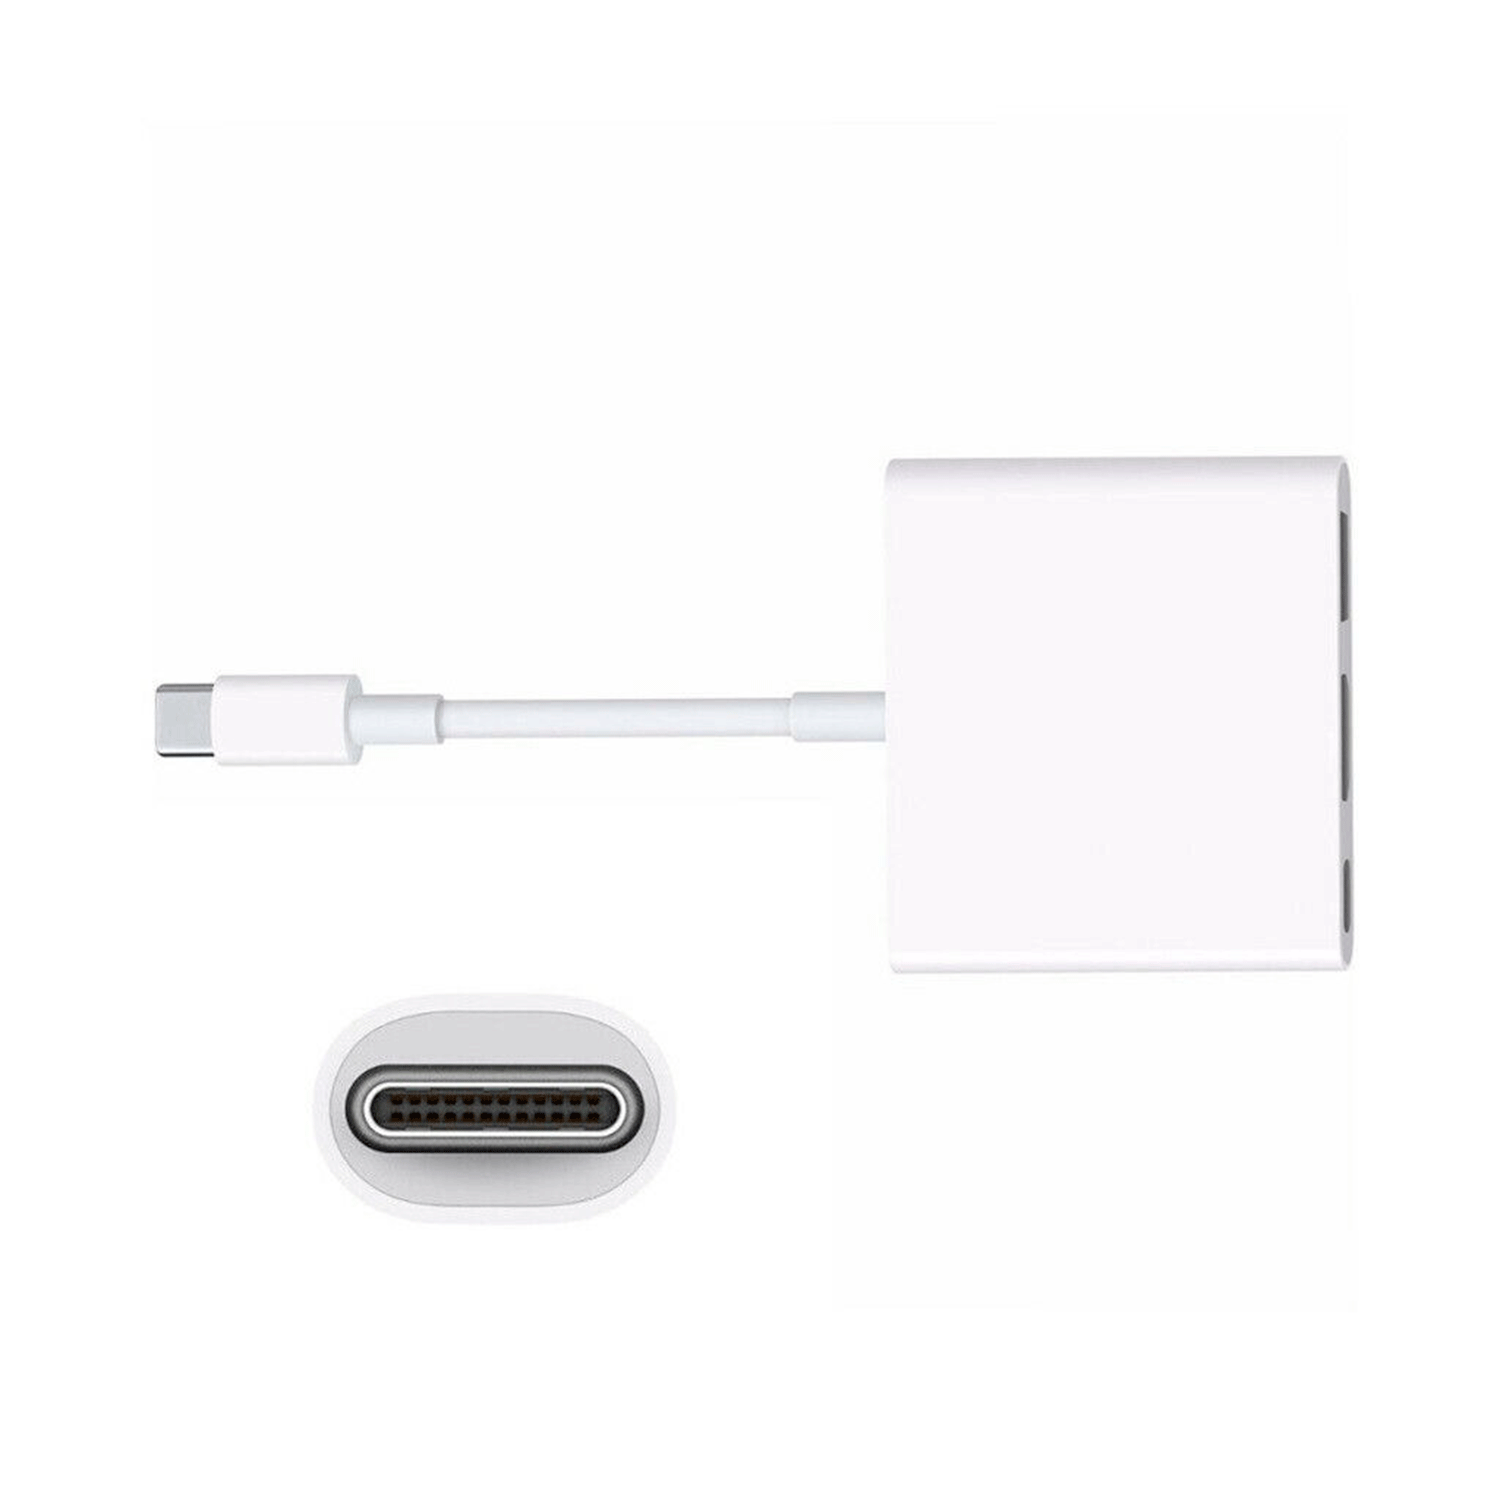 Adaptador Apple USB-C/AV Digital MUF82AM/A Multiporta HDMI-USB - Branco